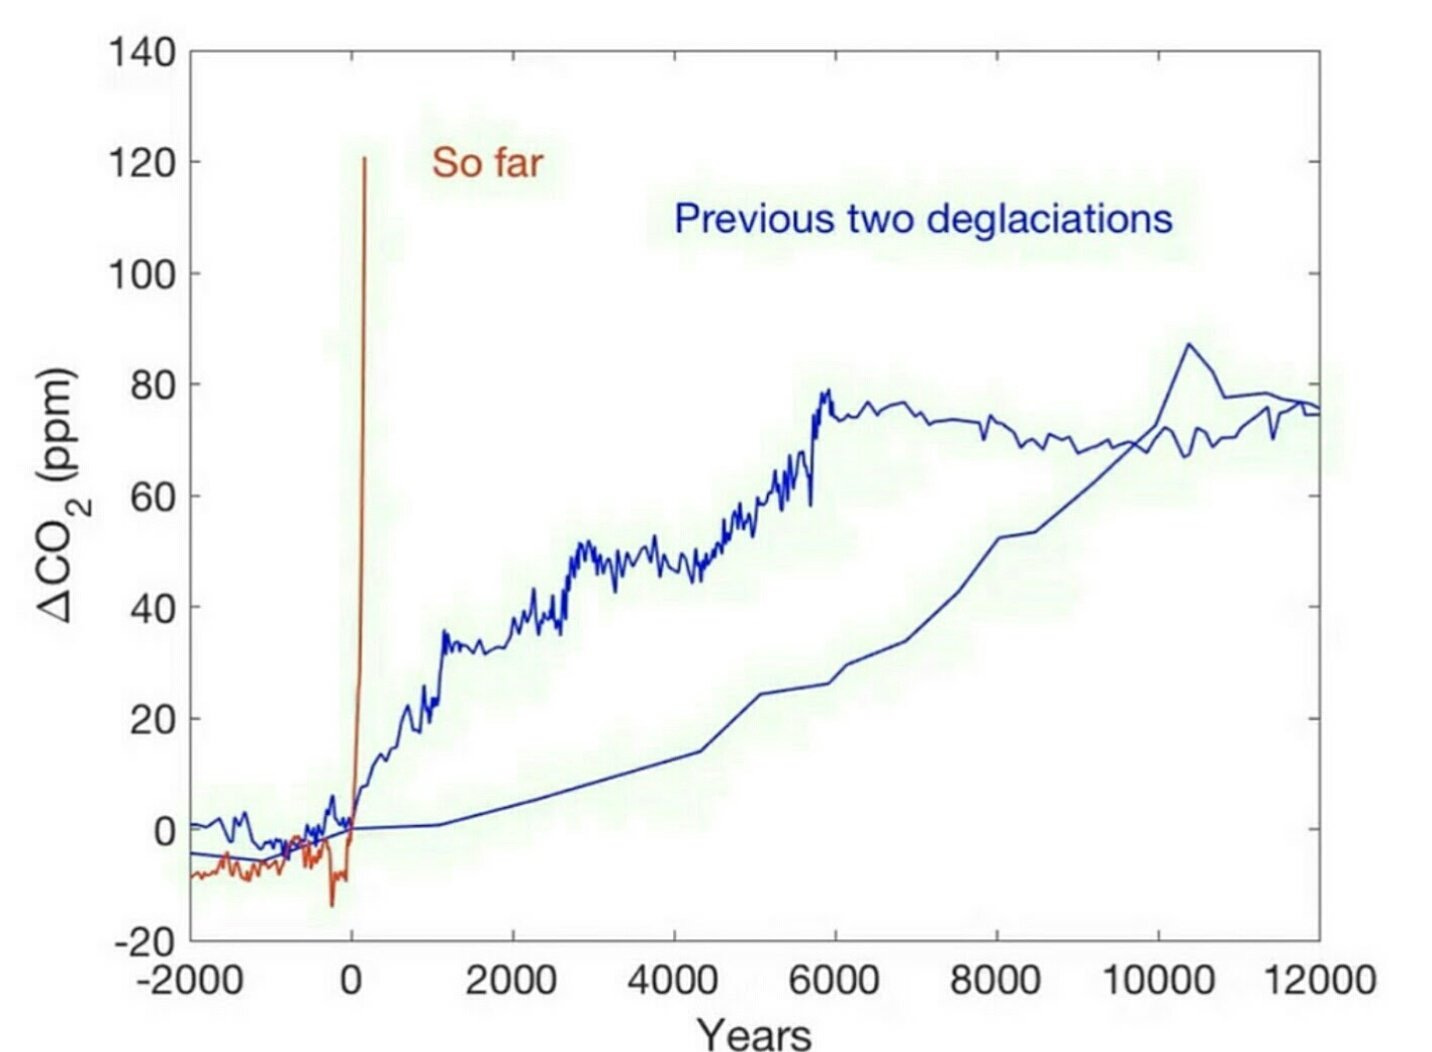 CO2 Today vs Previous Two Deglaciations